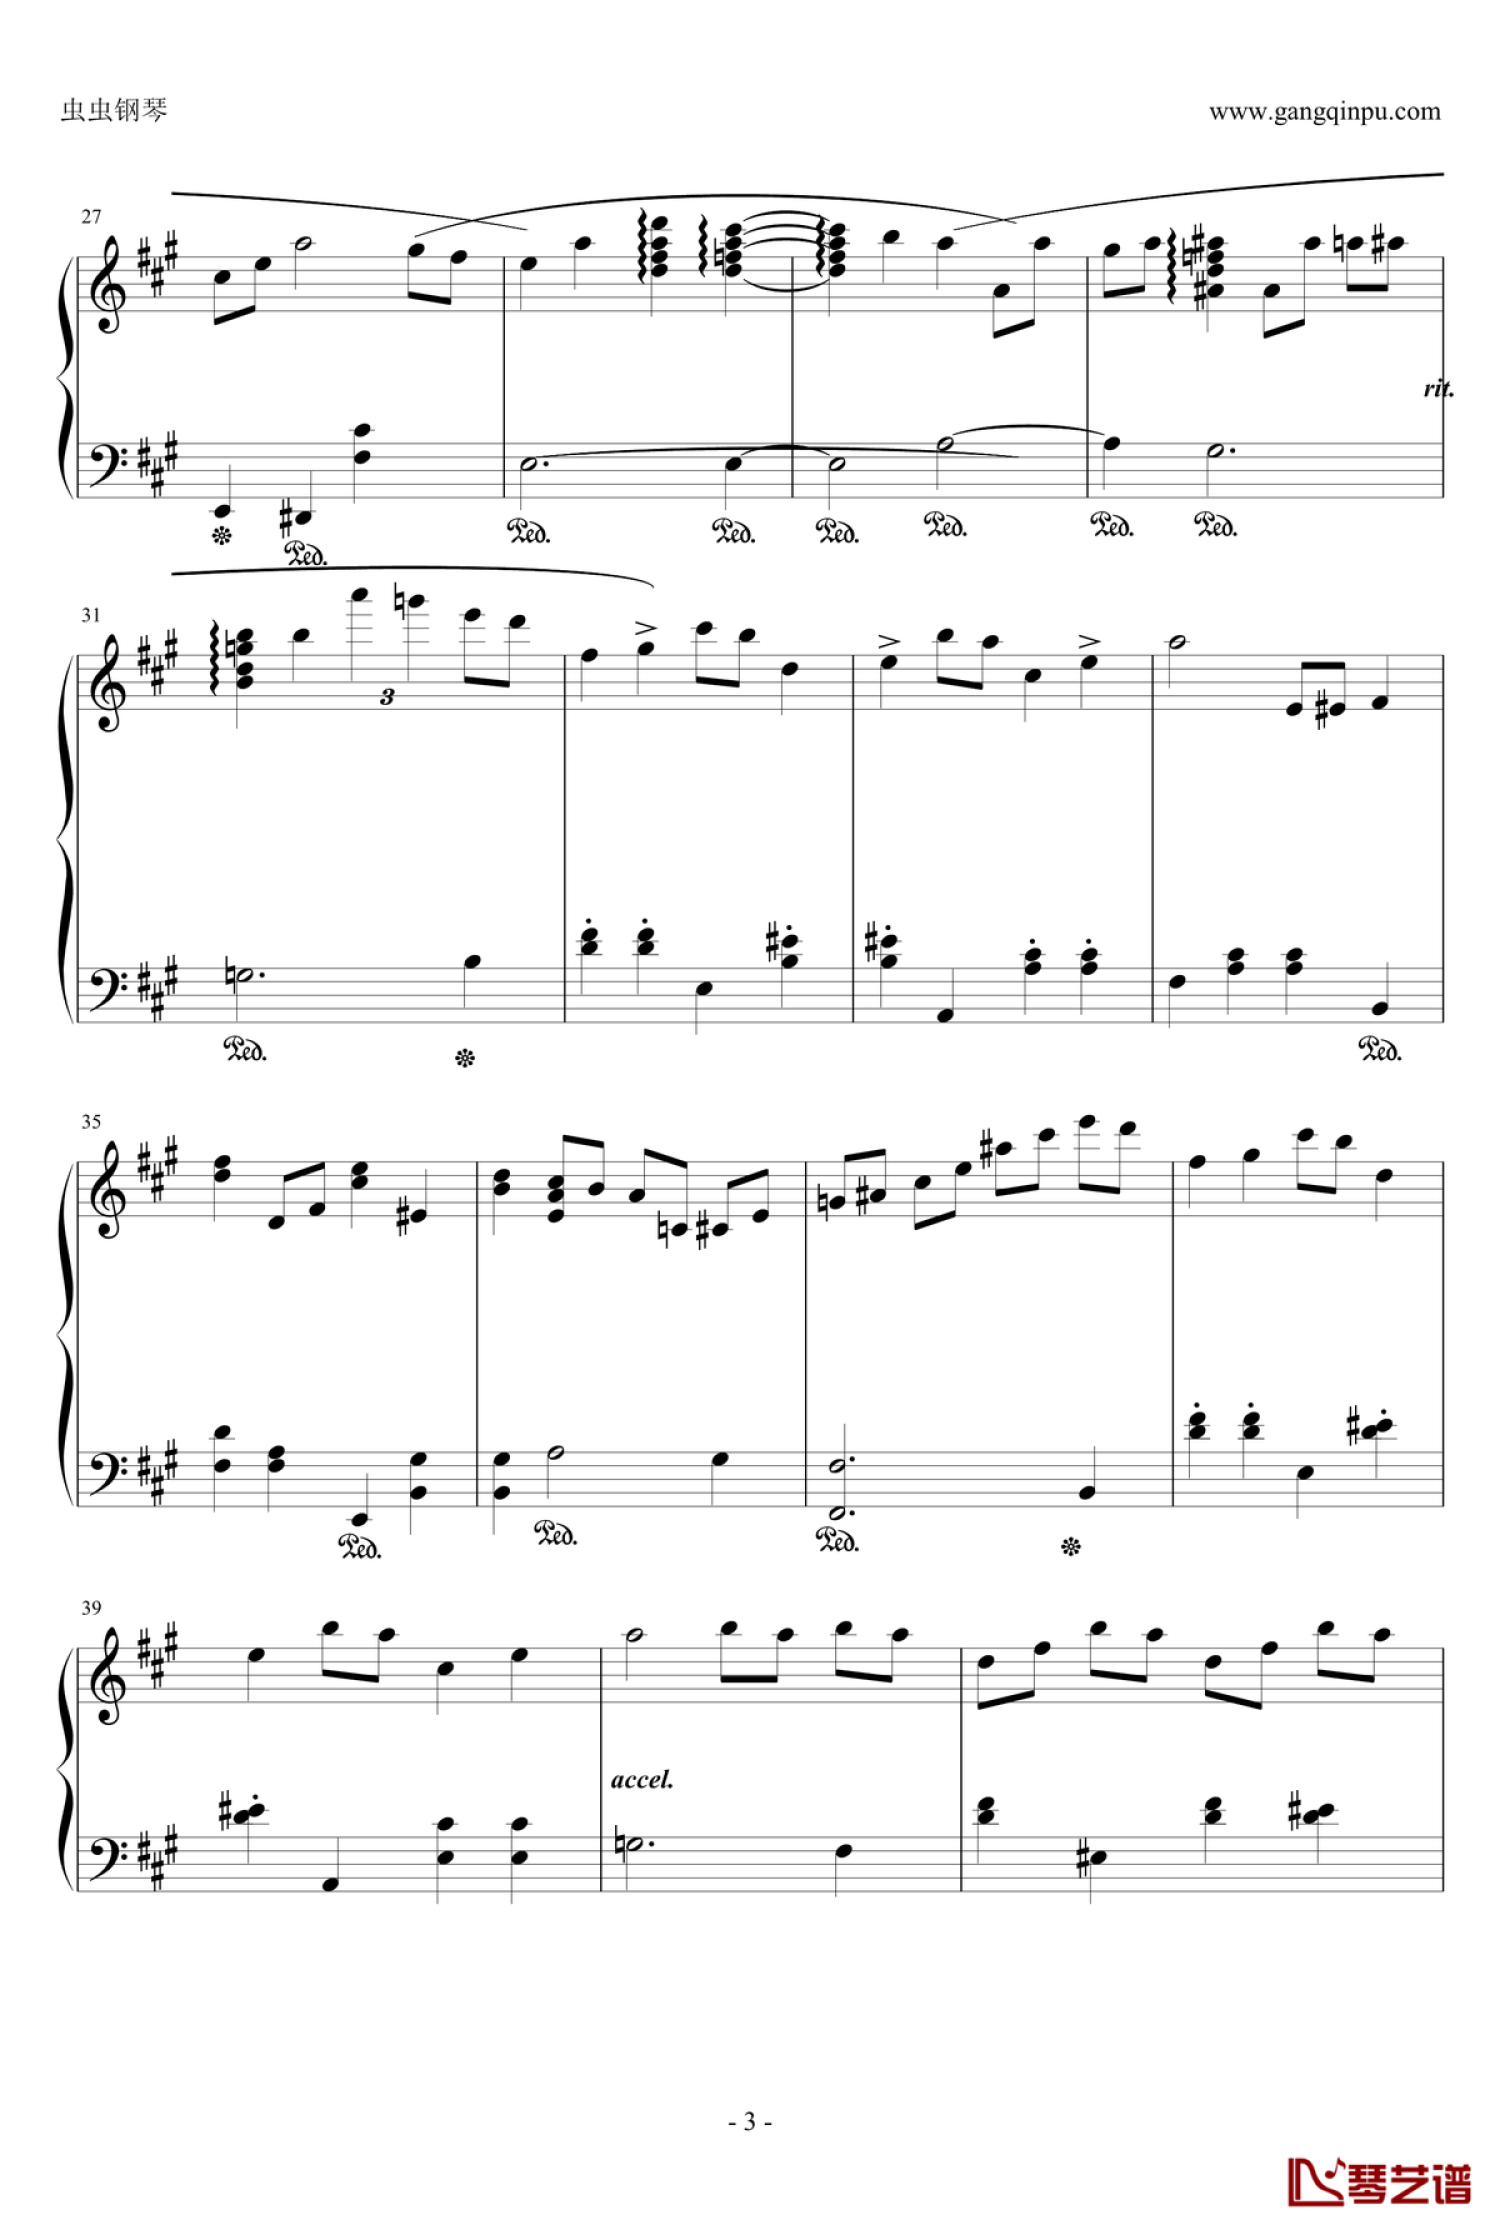 诺基亚经典铃声改编钢琴曲谱，于斯课堂精心出品。于斯曲谱大全，钢琴谱，简谱，五线谱尽在其中。